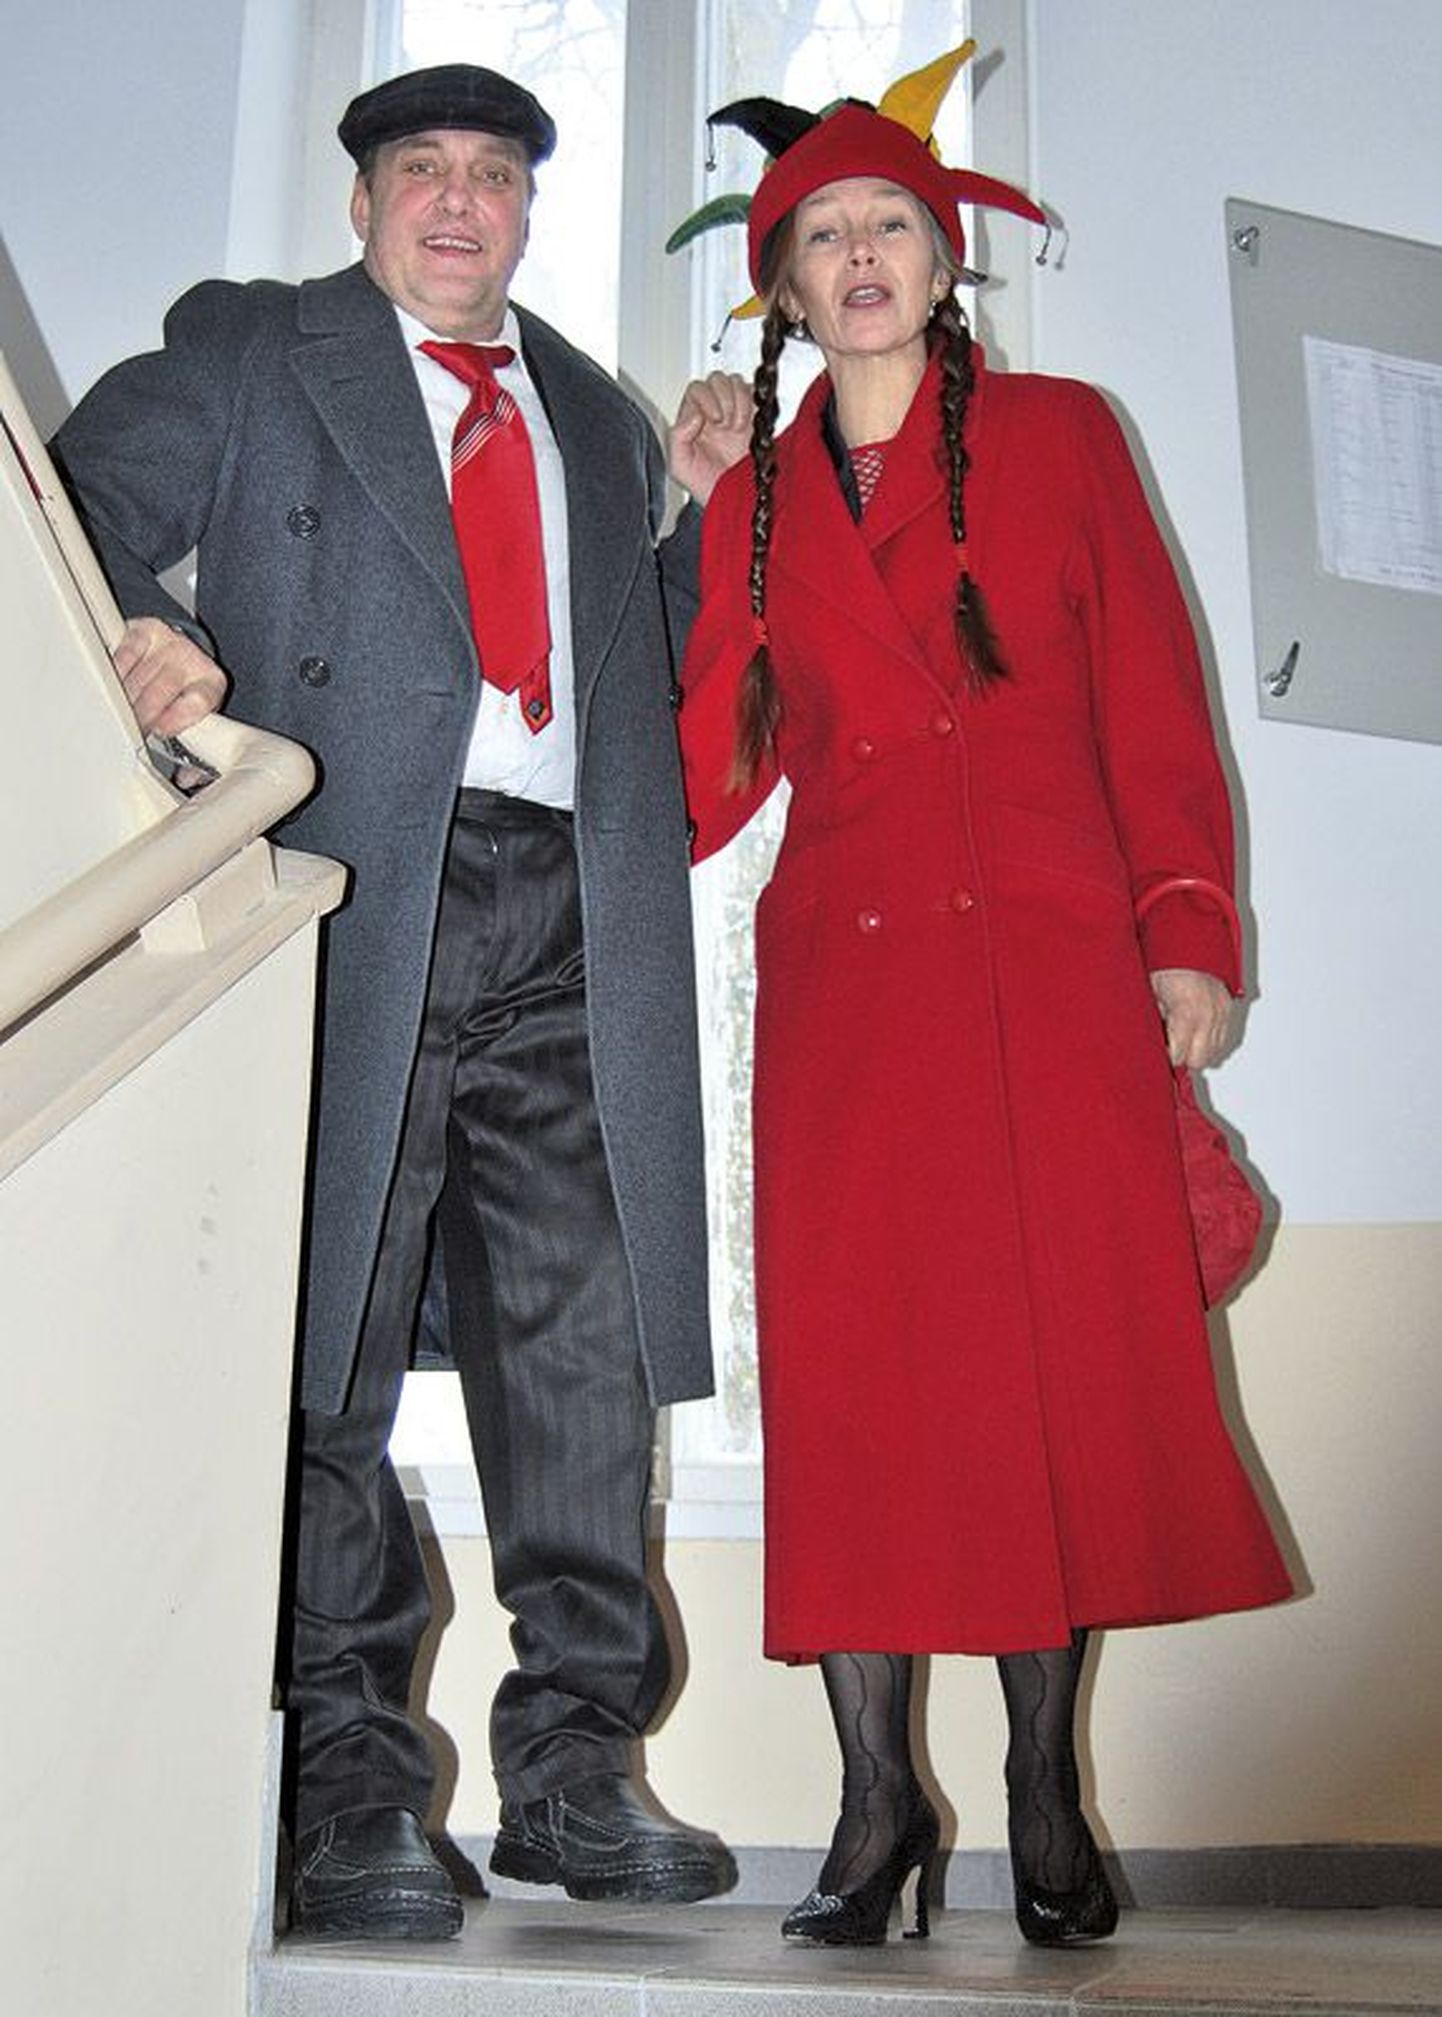 Näitleja Erik Ruus, kes läks poolteise aasta eest lahku kolleeg Anne Veesaarest, kosis 20. jaanuaril Rakveres oma naiseks kunstnik Meeli, kes kannab nüüd samuti perekonnanime Ruus